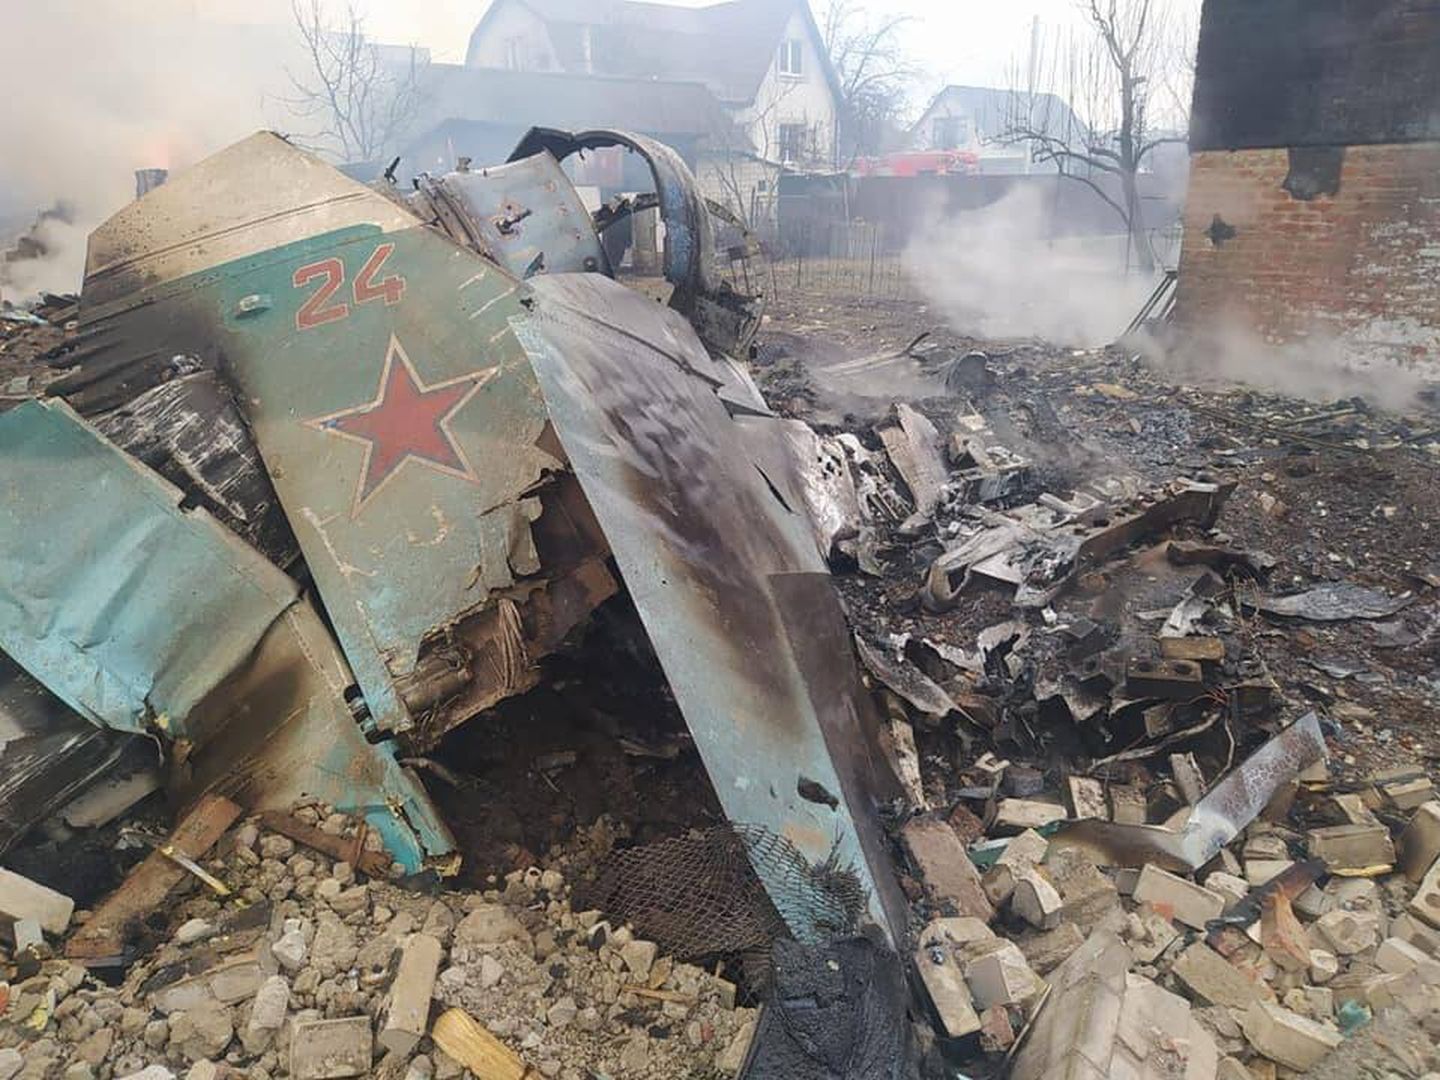 Cazabombardero Su-34 derribado en el área de Chernihiv el 5 de marzo de 2022. (Dsns.gov.ua)